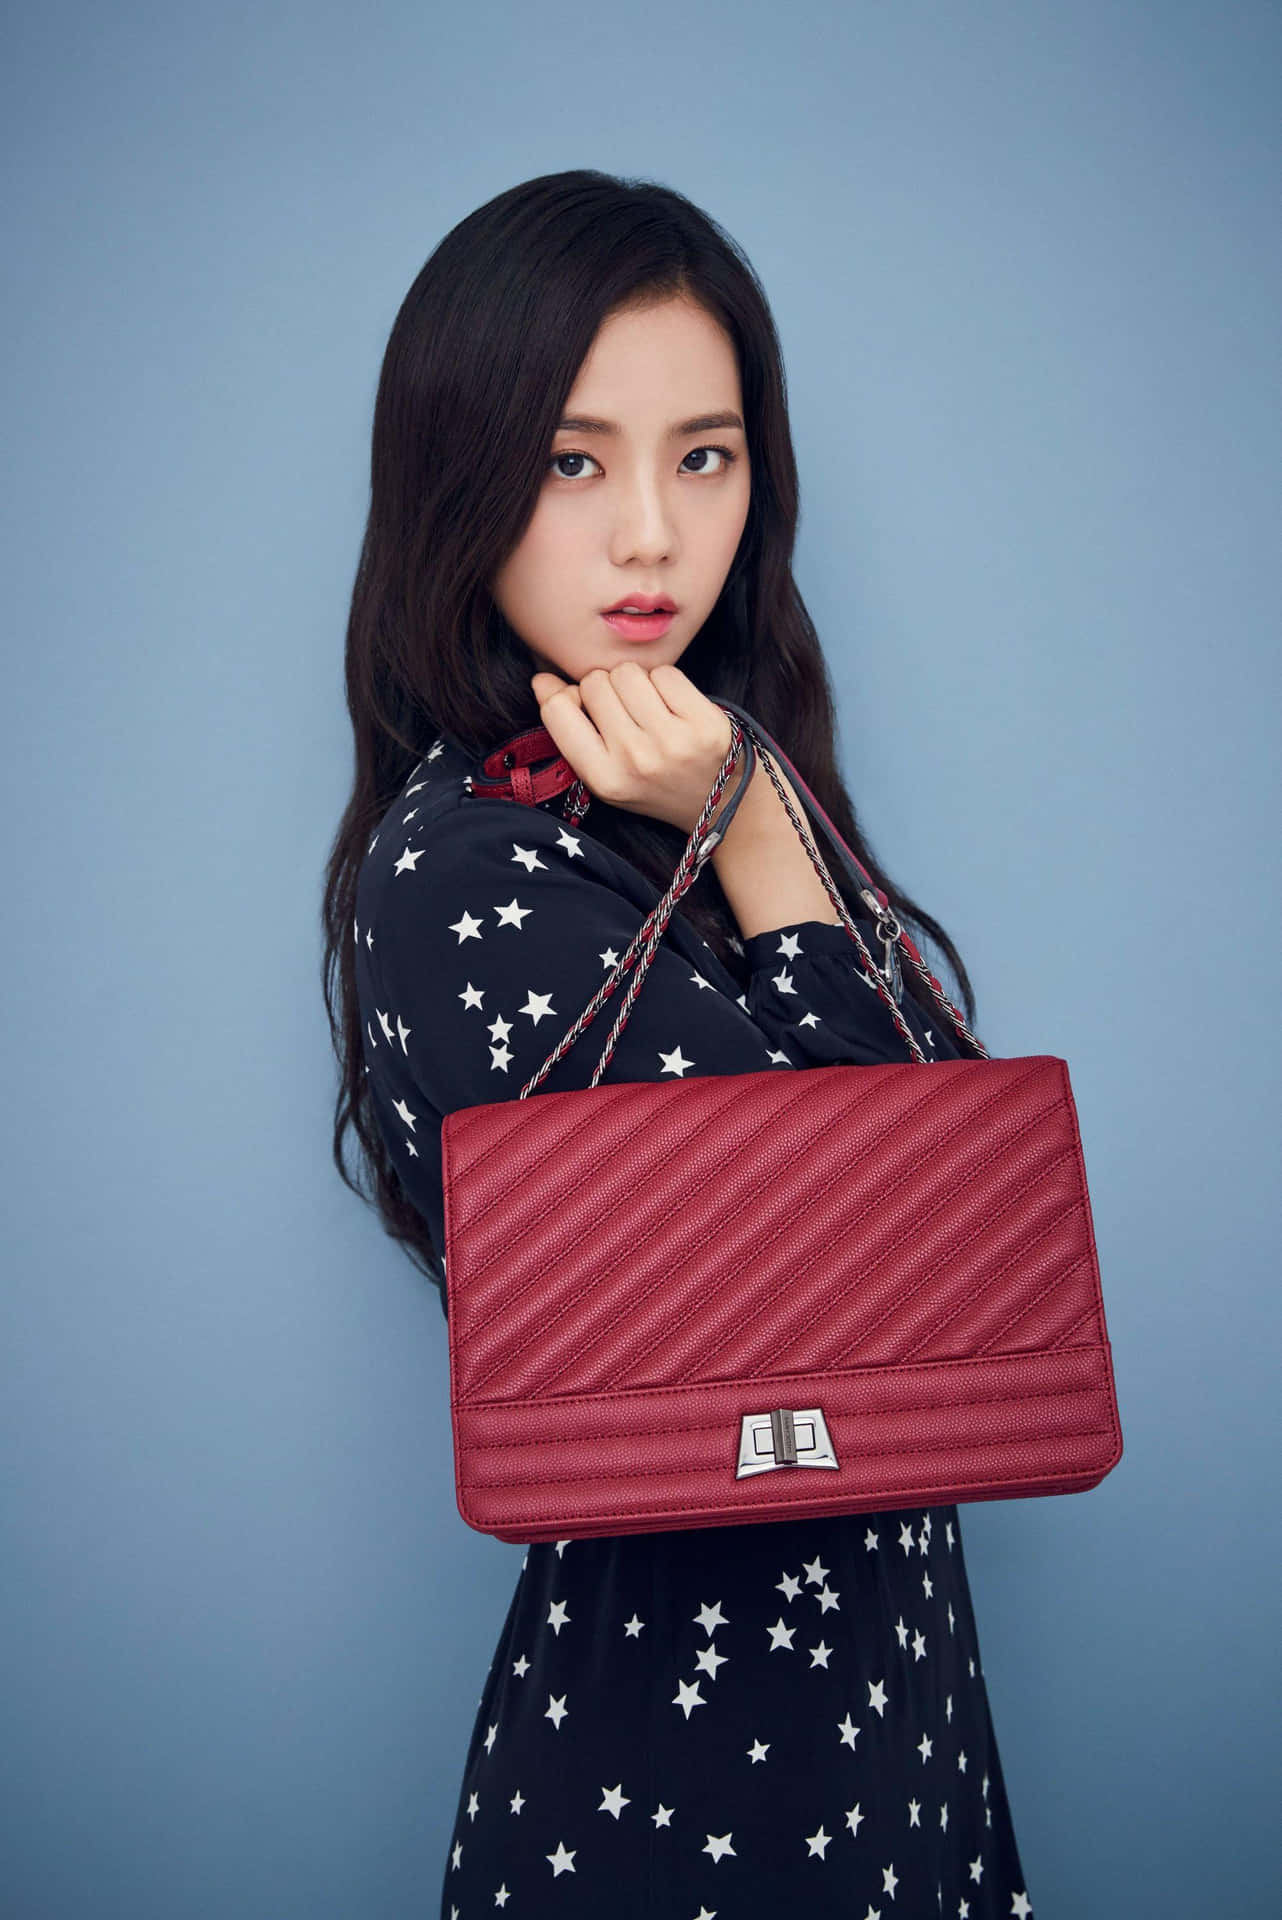 Download Jisoo Blackpink Red Bag Model Wallpaper | Wallpapers.com